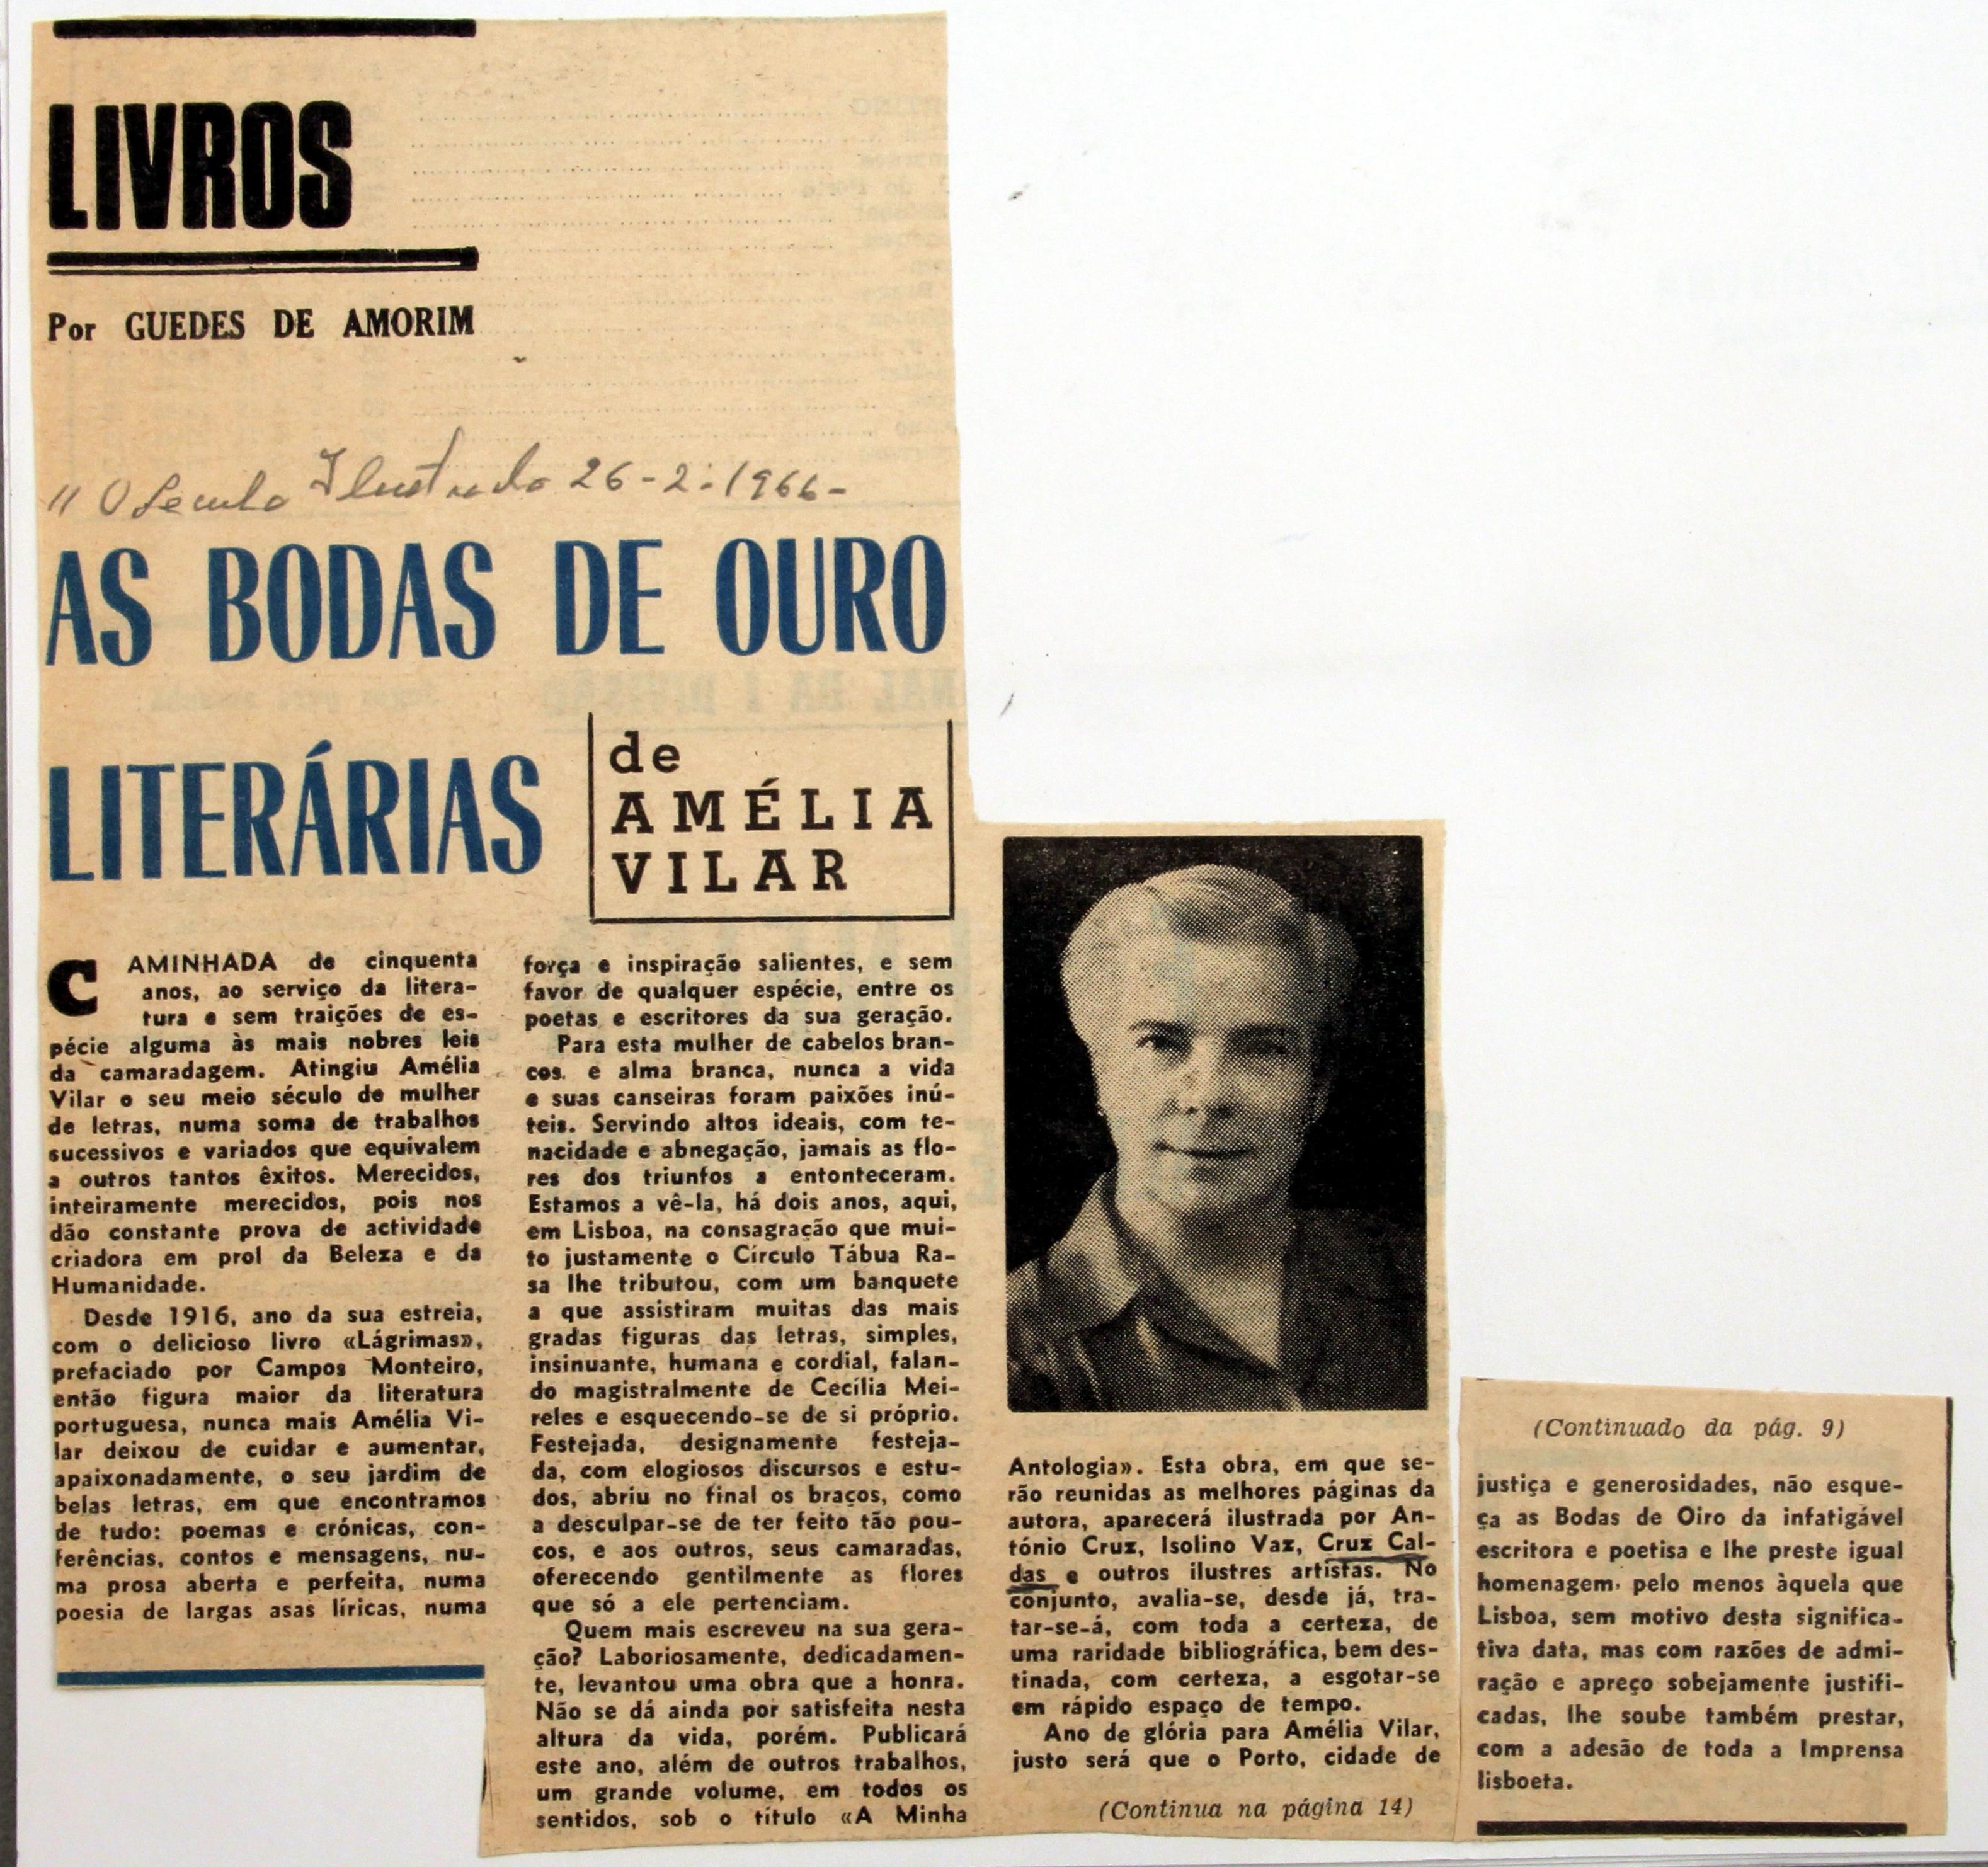 Cruz Caldas e a poetisa Amélia Vilar : «O Século Ilustrado» : Livros : as bodas de ouro literárias de Amélia Vilar